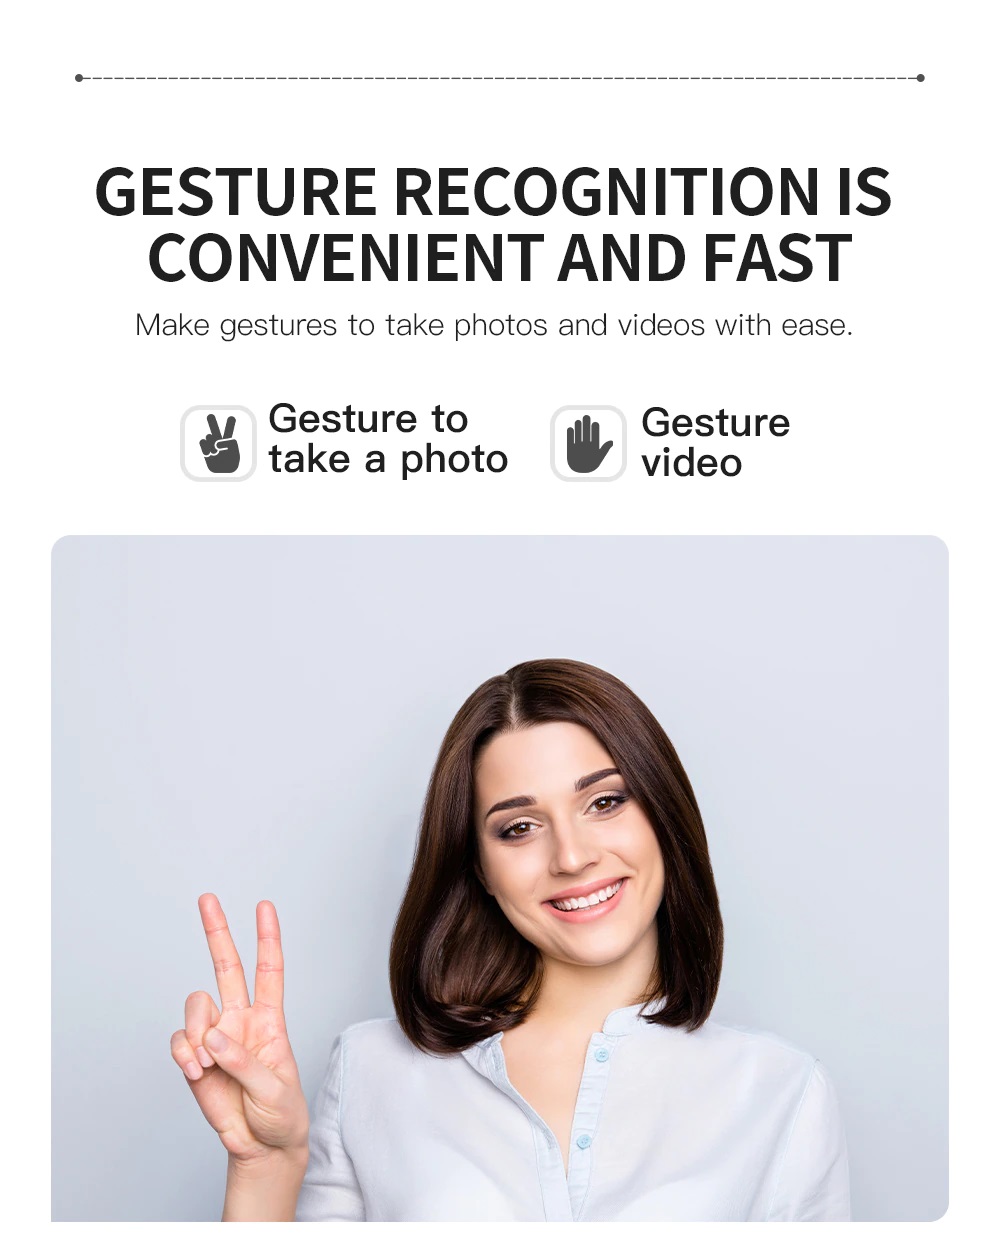 فقط با اشاره دست، عکس و فیلم بگیرید